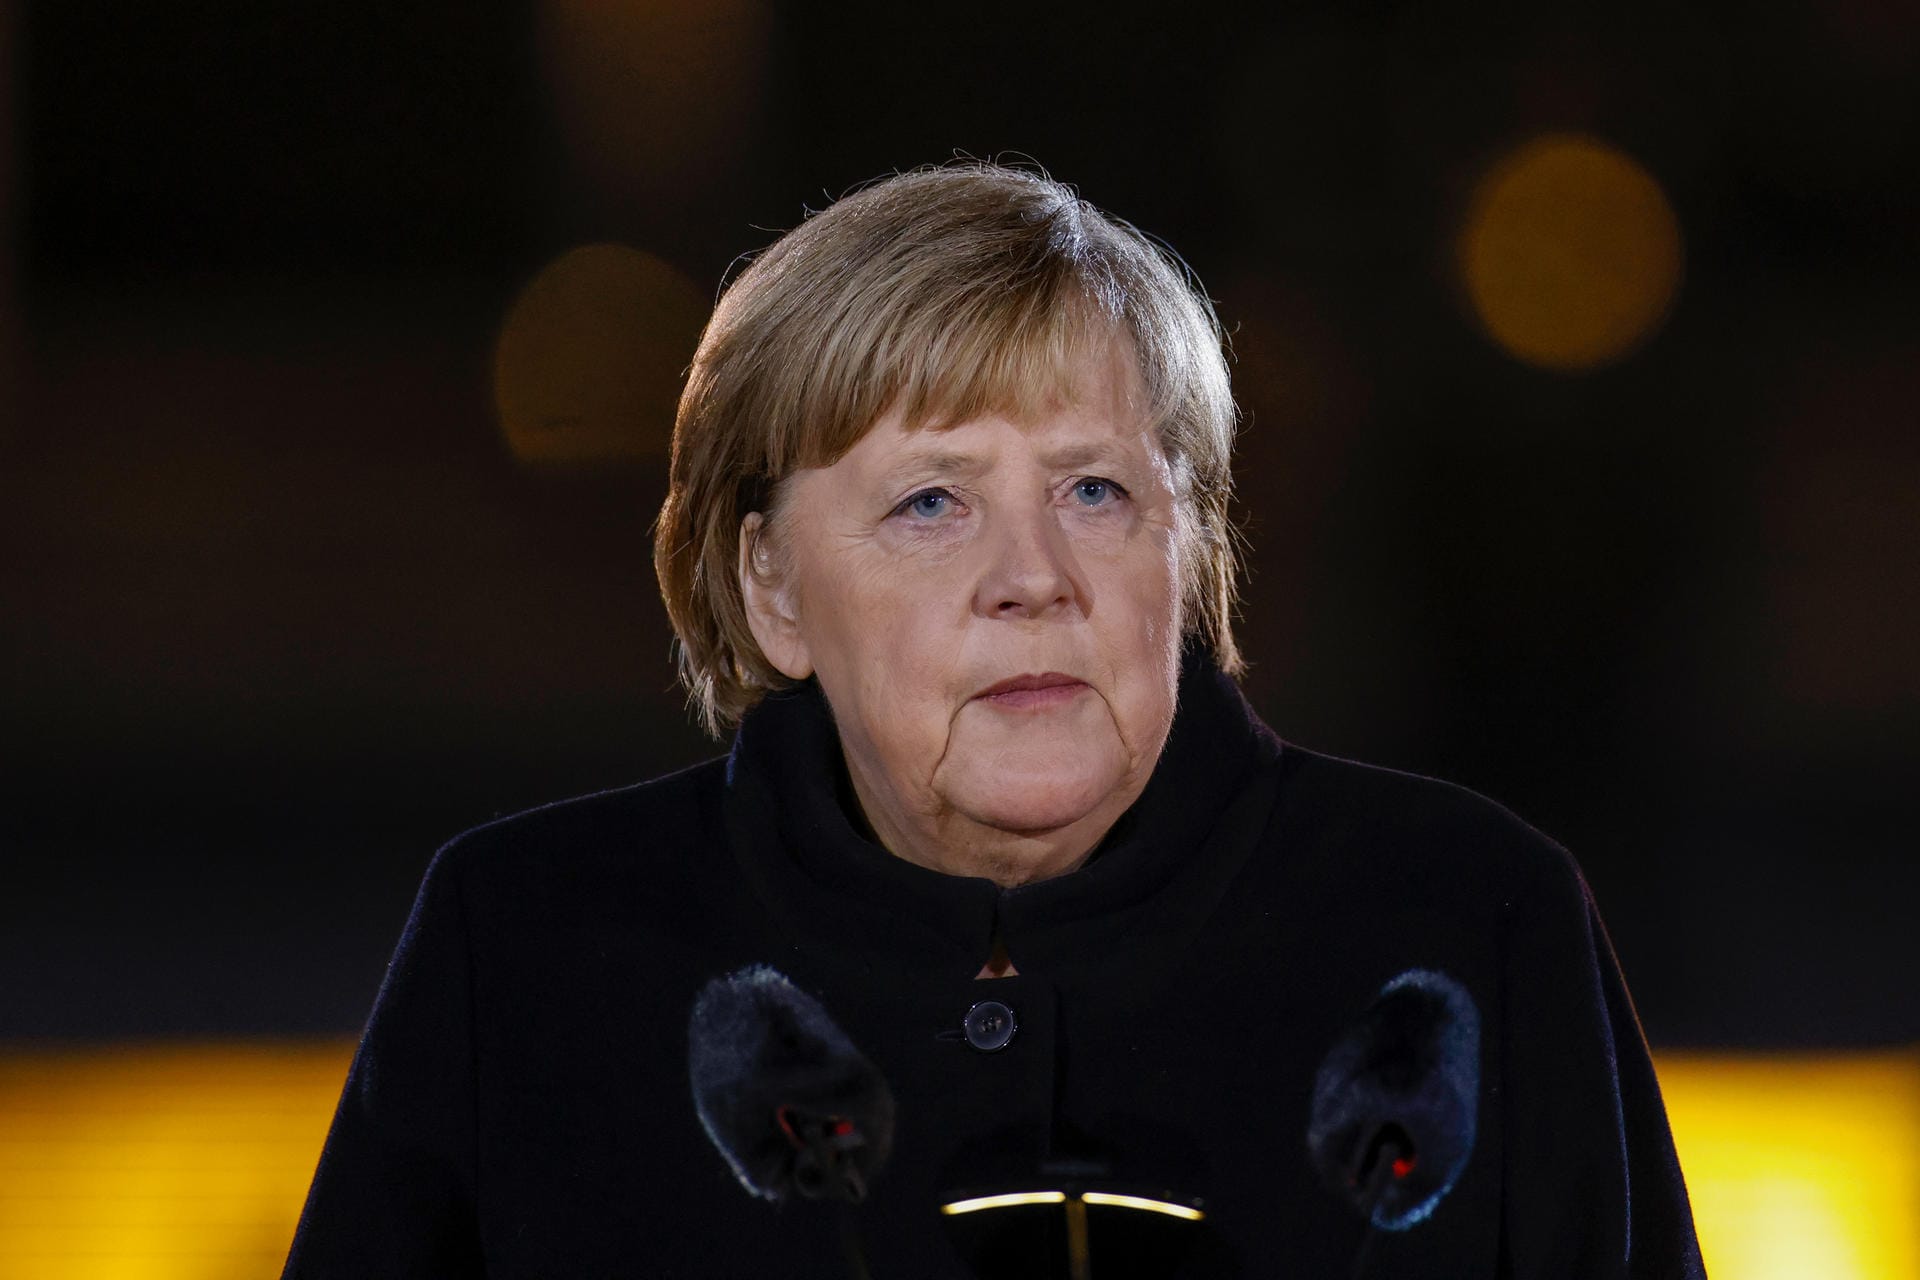 Angela Merkel: "Wenn ich heute hier vor Ihnen stehe empfinde ich vor allem Dankbarkeit und Demut.", sagte die Politikerin zum Beginn ihrer Rede.